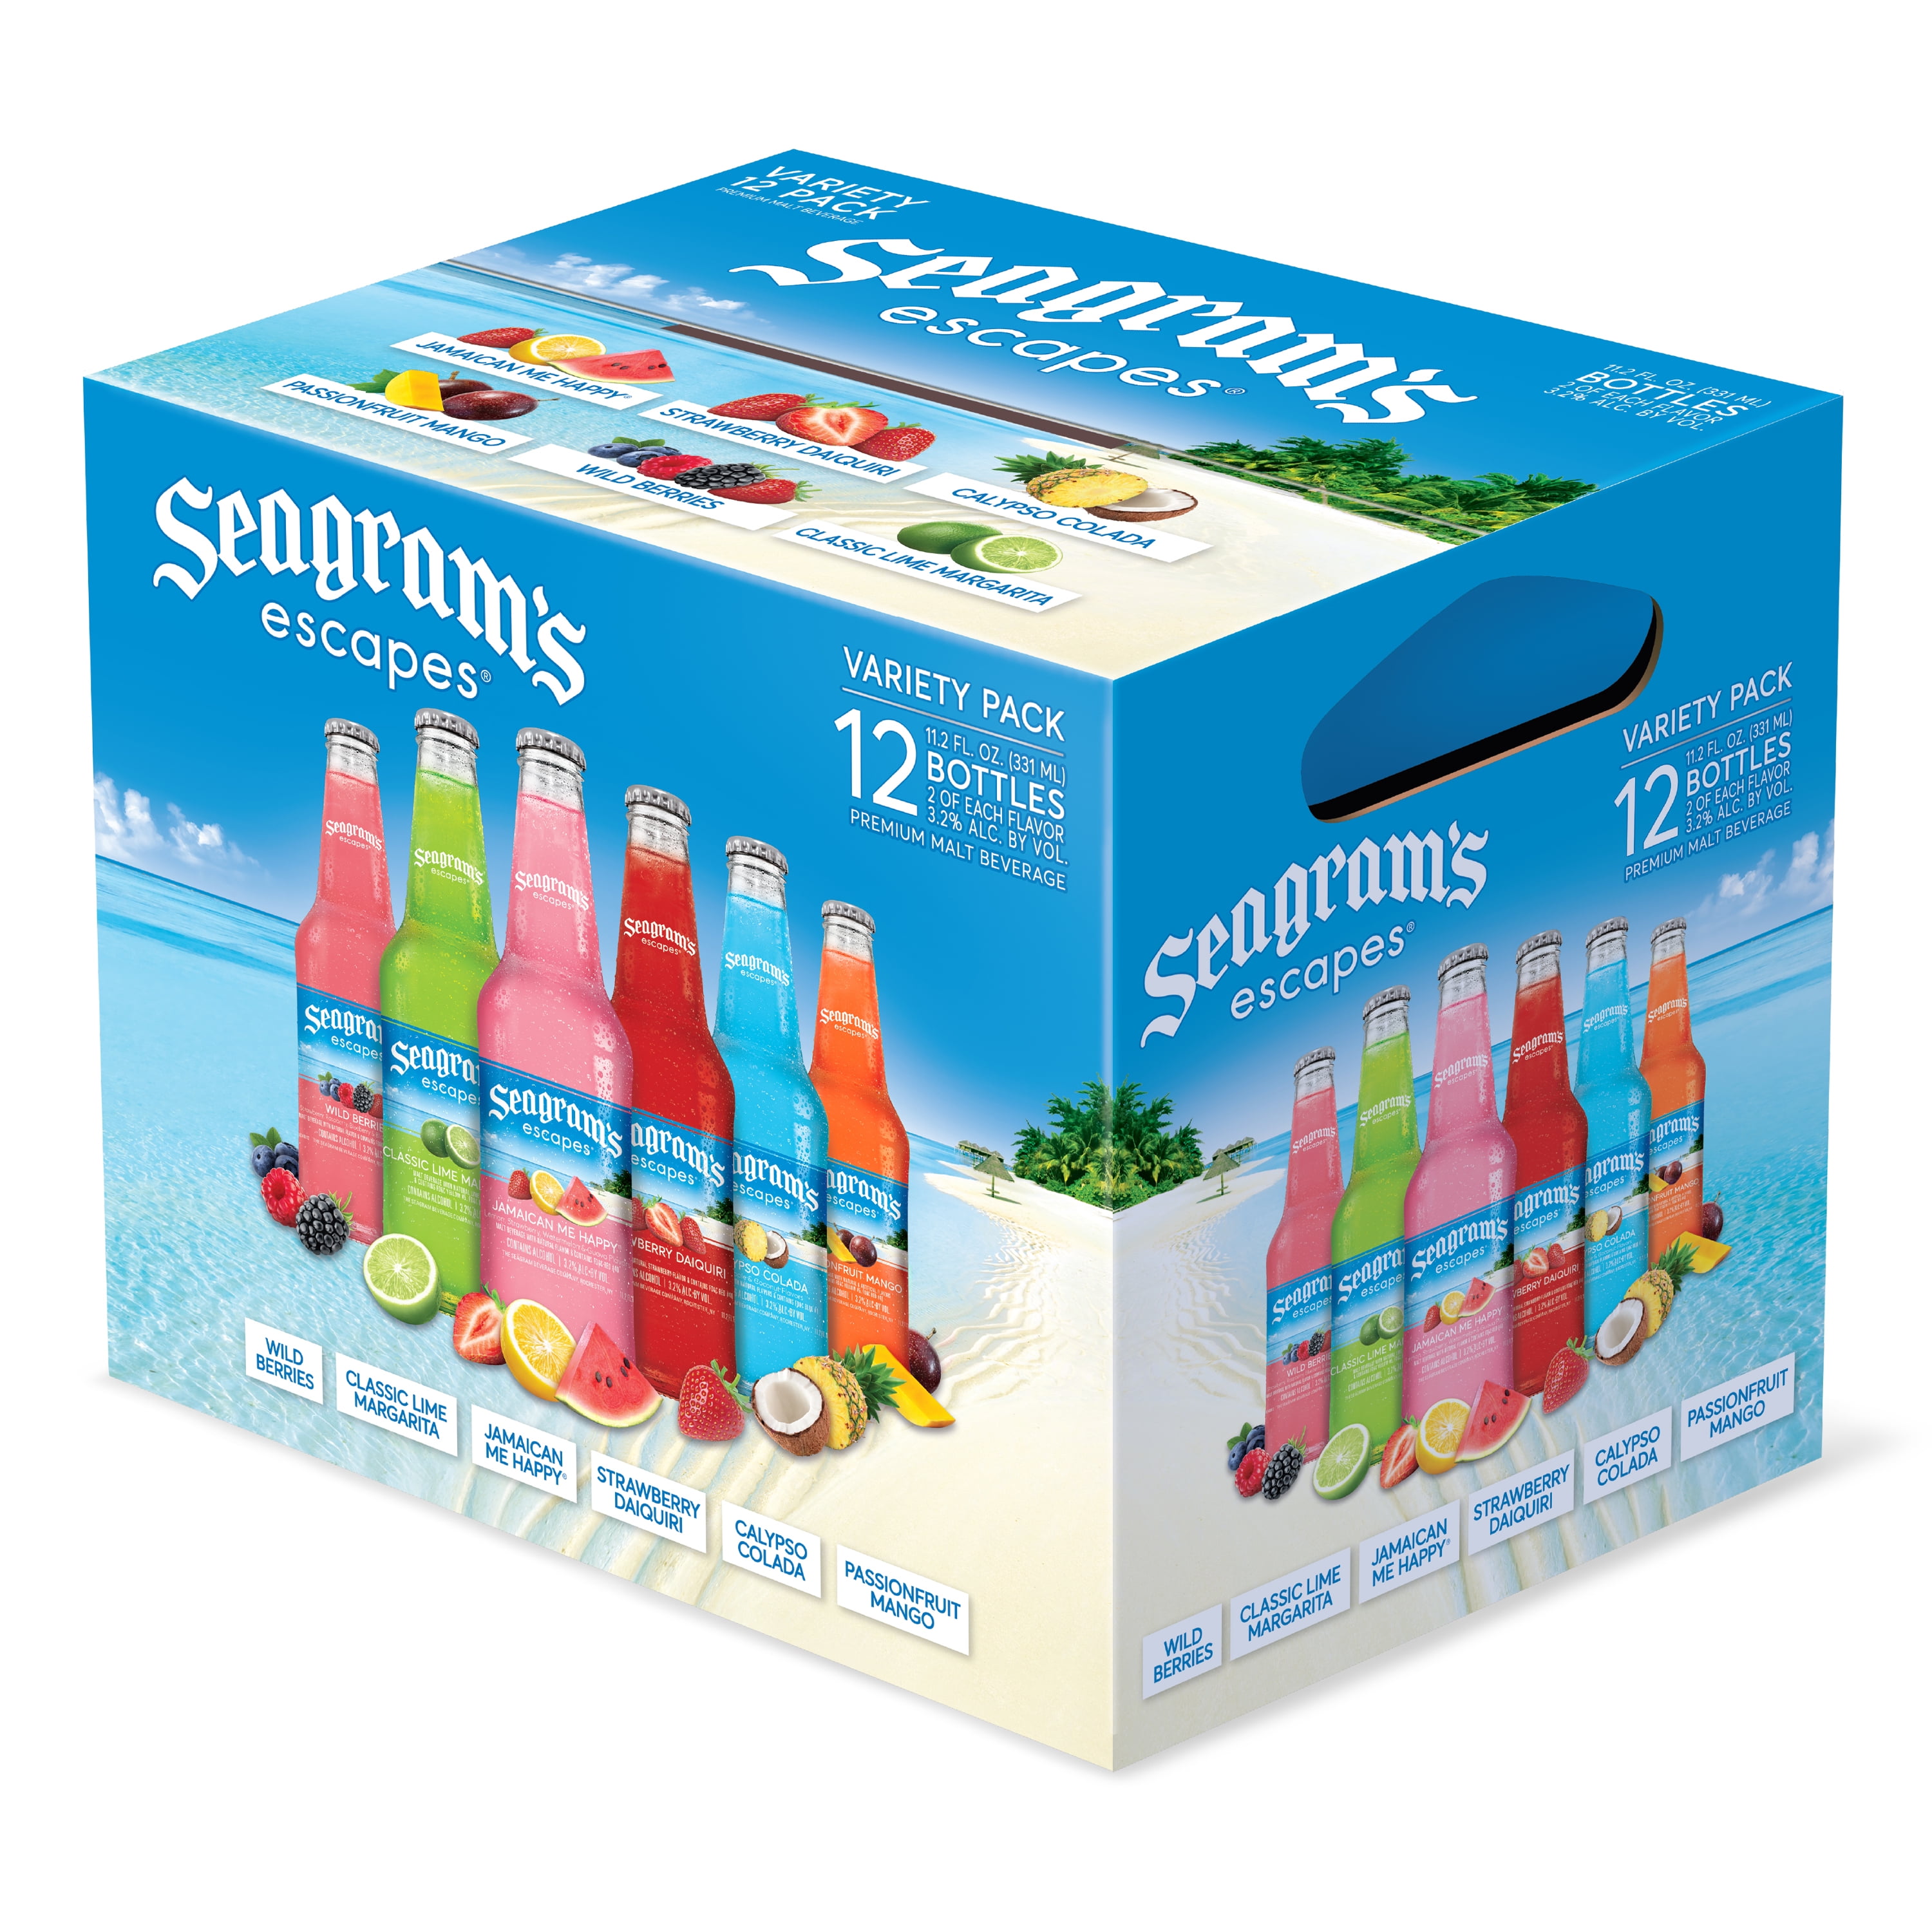 buy-seagram-s-escapes-variety-pack-malt-beverage-12-count-11-2-fl-oz